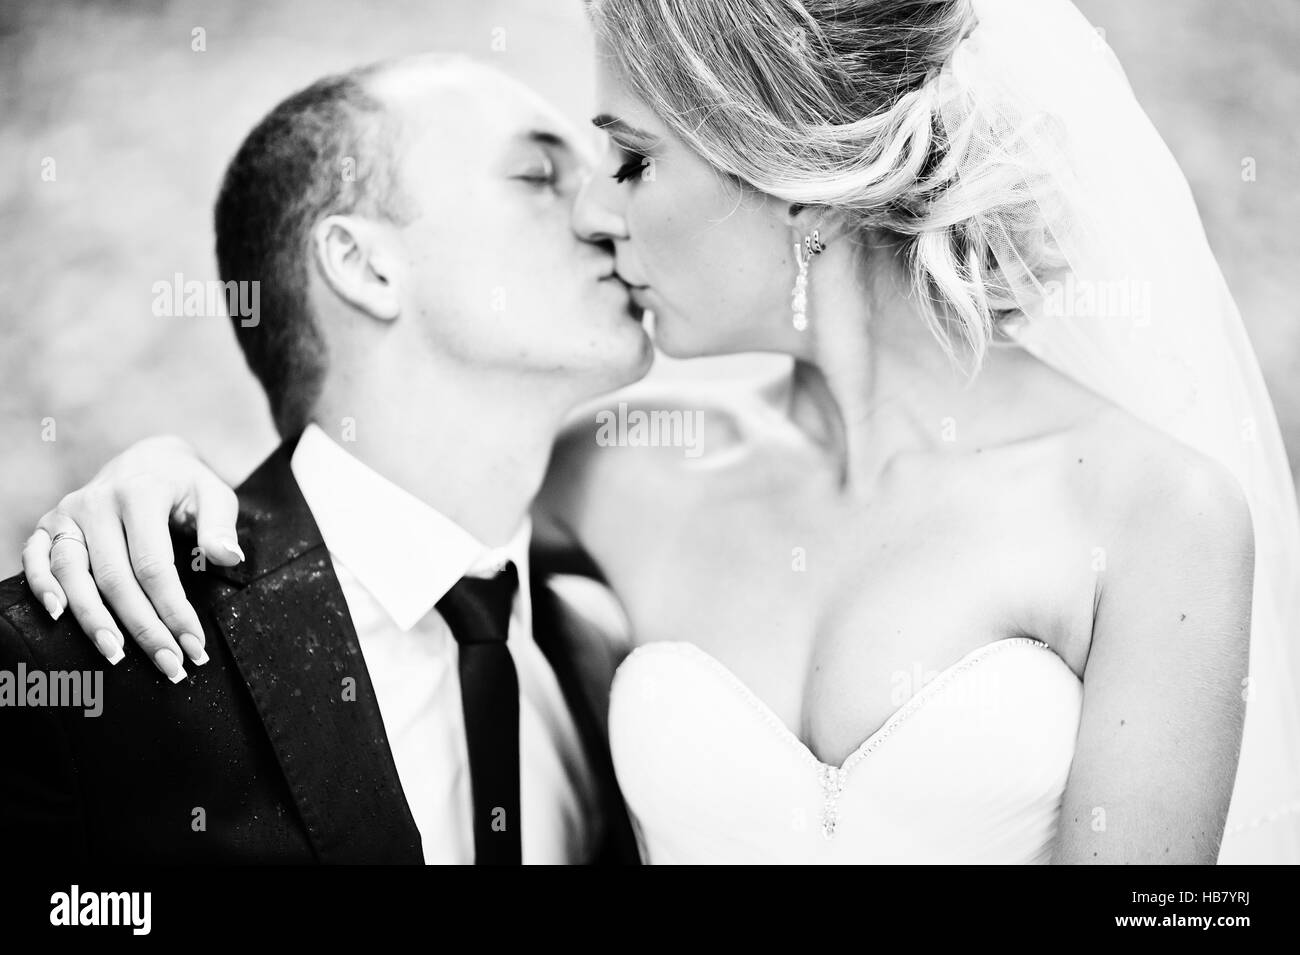 Close up portrait of kissing wedding couple Banque D'Images